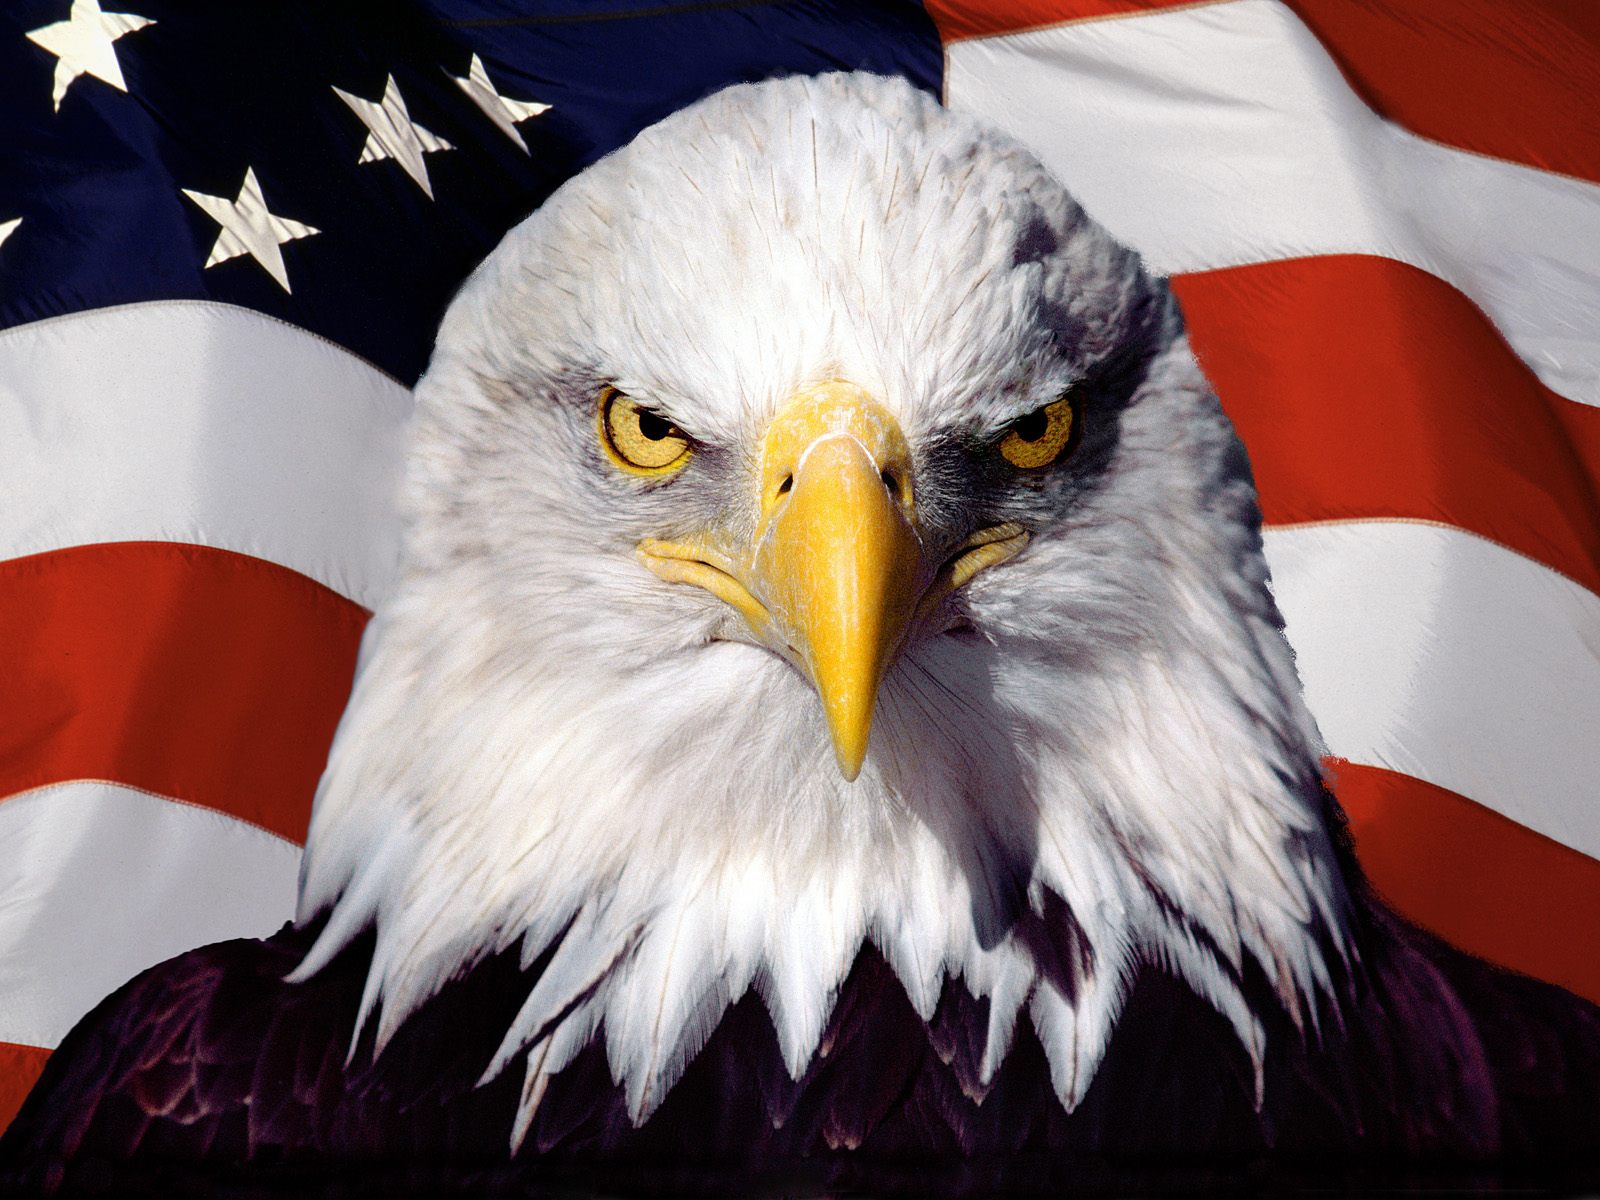 Biểu tượng quốc gia của Hoa Kỳ là một trong những điều đầy ý nghĩa và đặc biệt. Đó là niềm tự hào của người Mỹ và được tung hoành trên khắp nơi trên thế giới. Toidi.net cung cấp những bức ảnh đẹp về biểu tượng quốc gia của Hoa Kỳ để bạn có thể khám phá điều đặc biệt này.